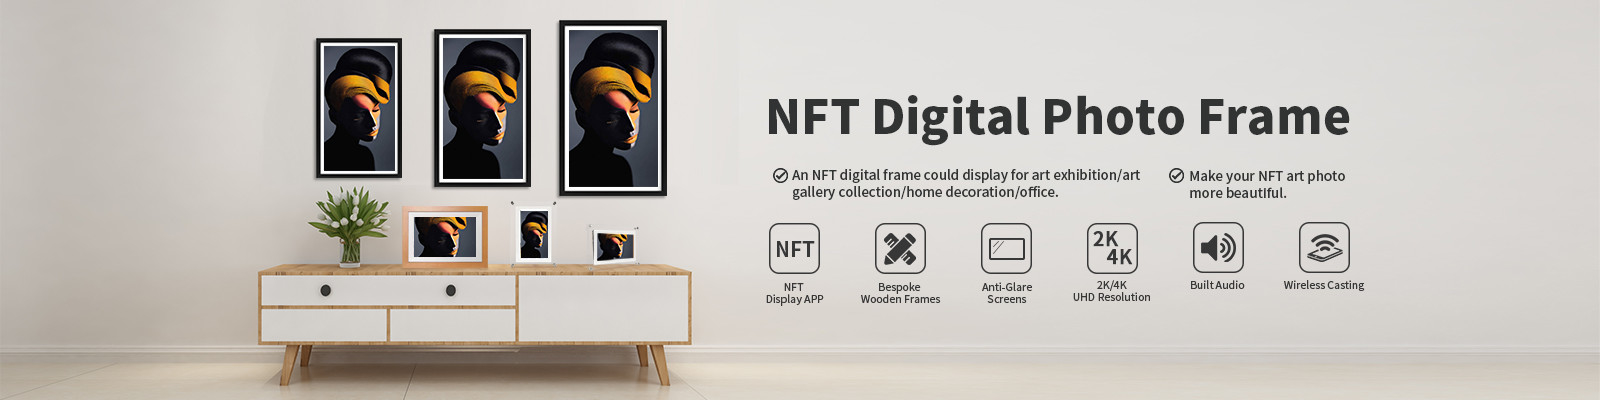 Cadre de NFT Digital